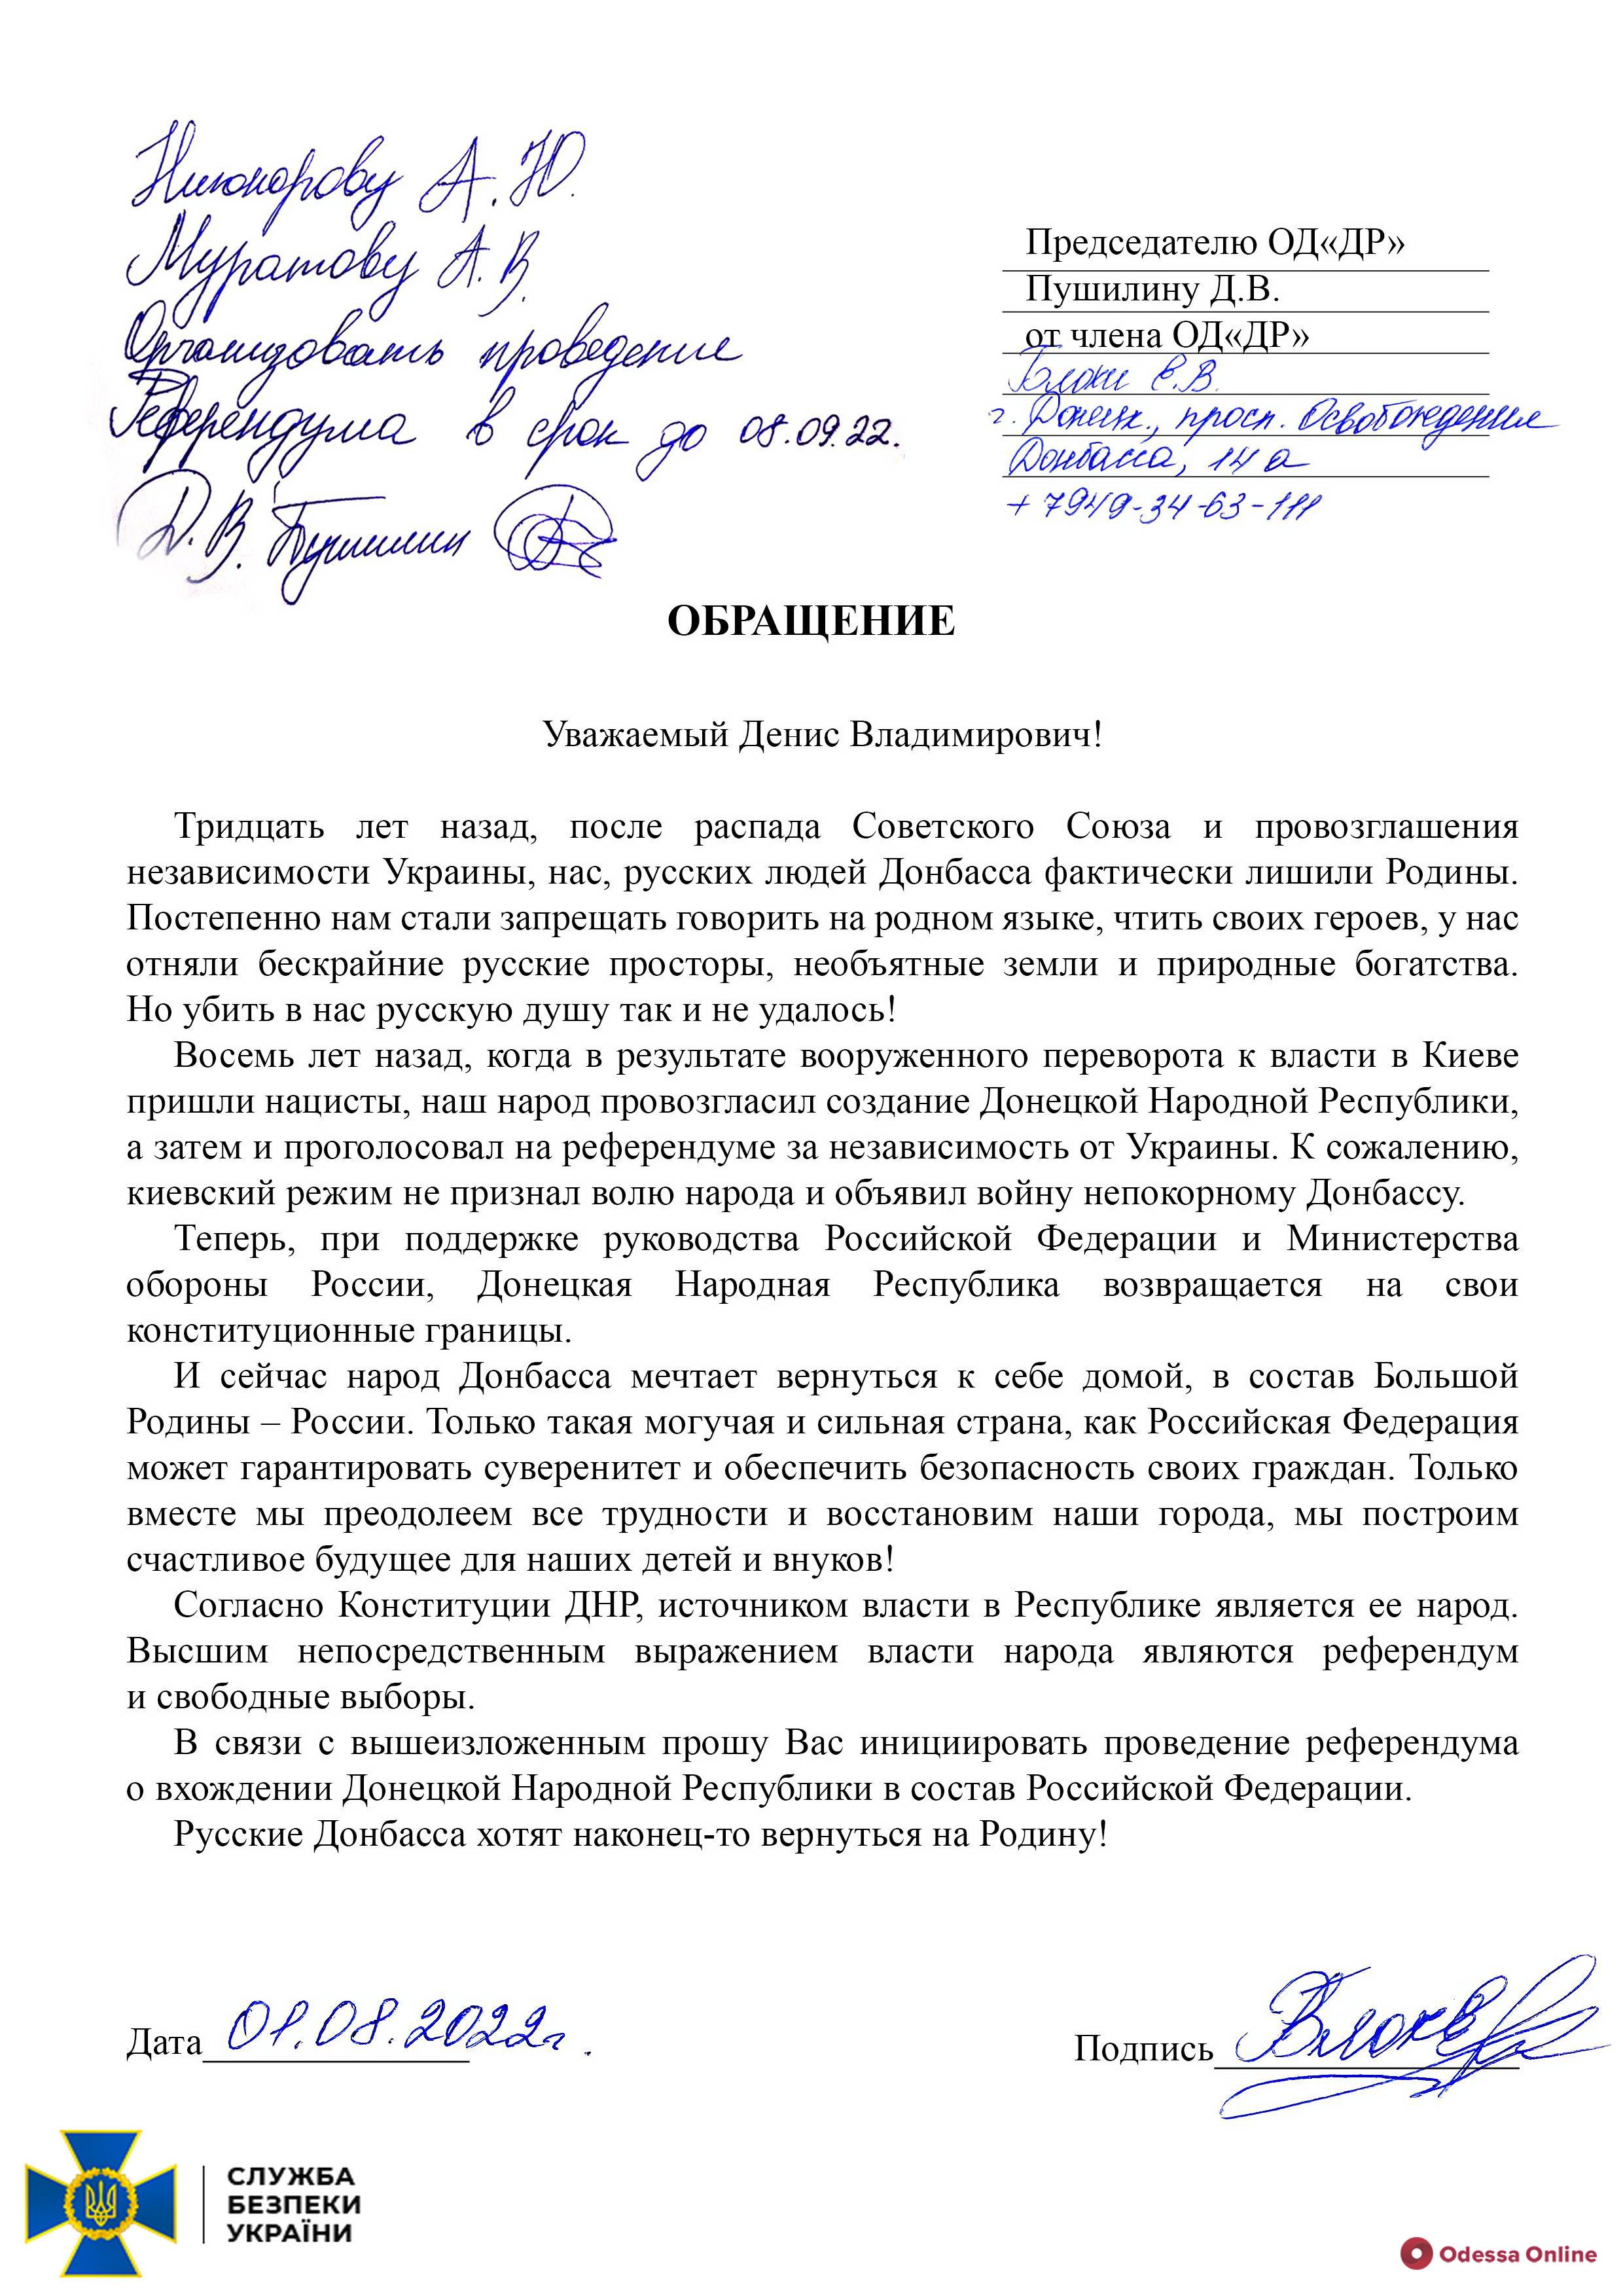 СБУ викрила плани рф щодо псевдореферендуму з приєднання окупованих регіонів України